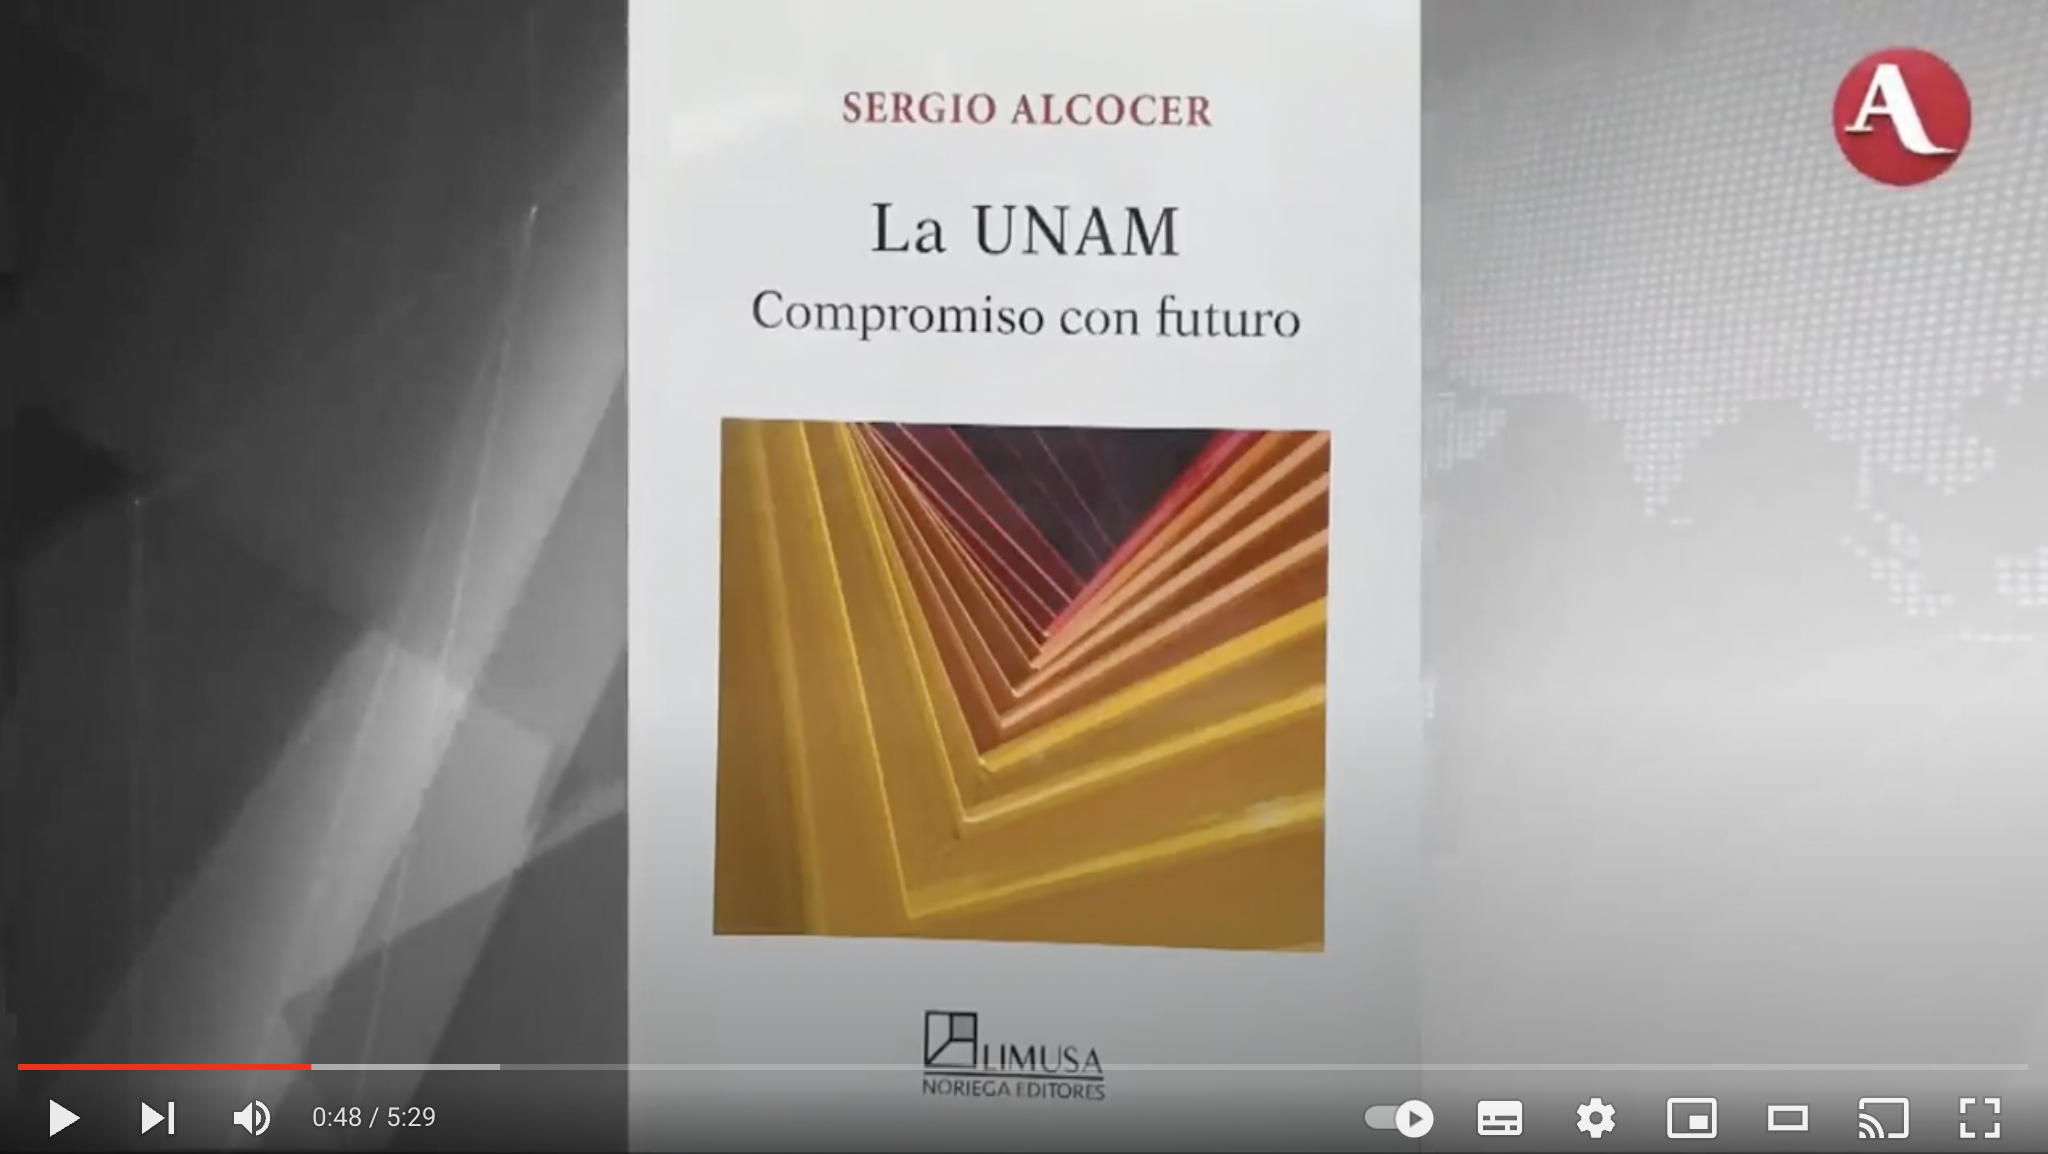 Reseña del libro La UNAM compromiso con futuro